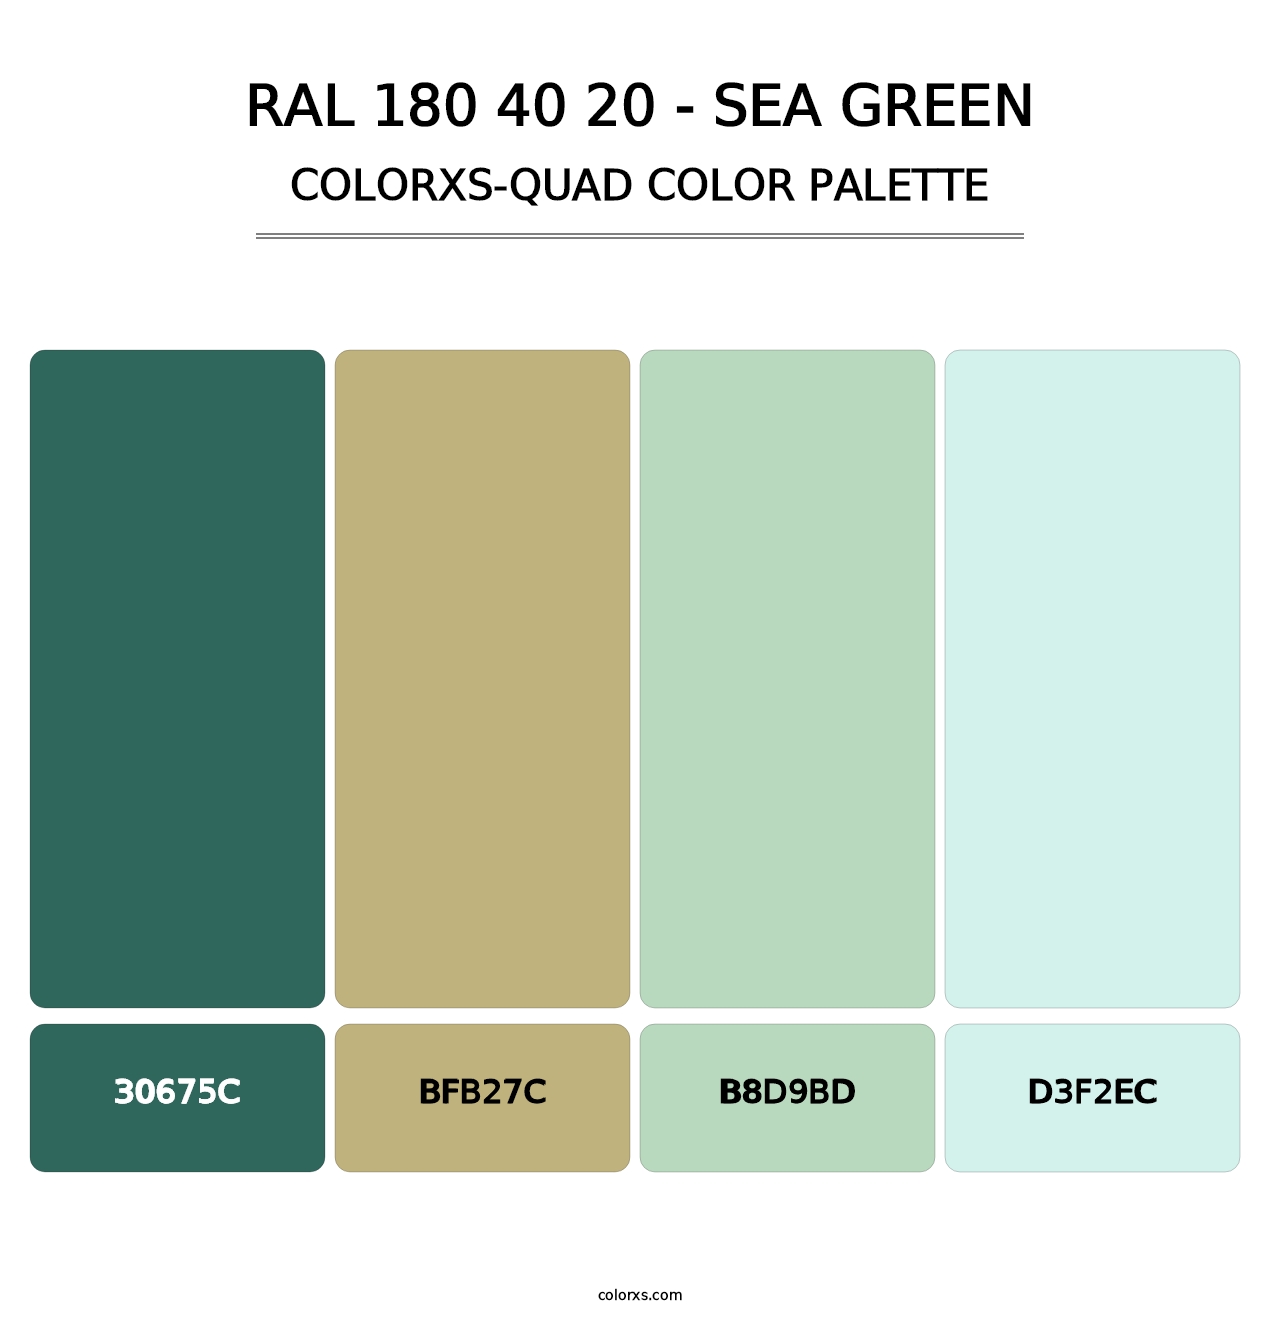 RAL 180 40 20 - Sea Green - Colorxs Quad Palette